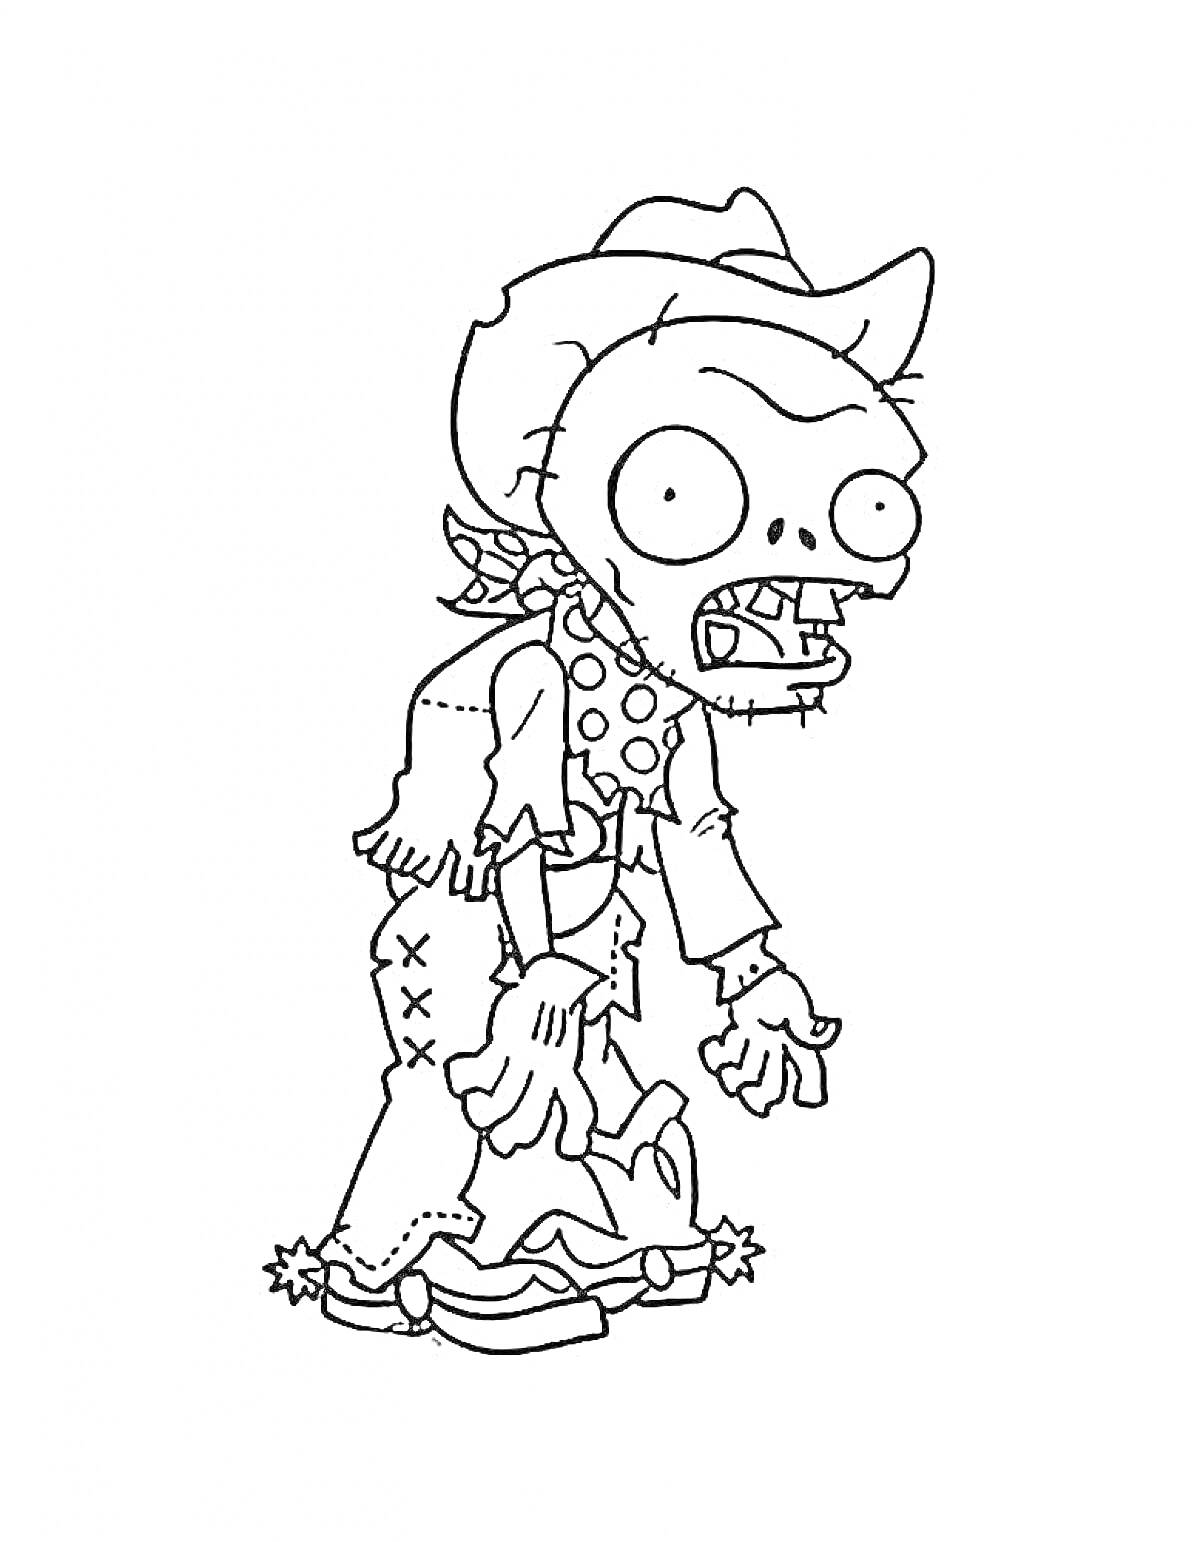 Раскраска Зомби ковбой с повязкой на шее и лохмотьями на одежде